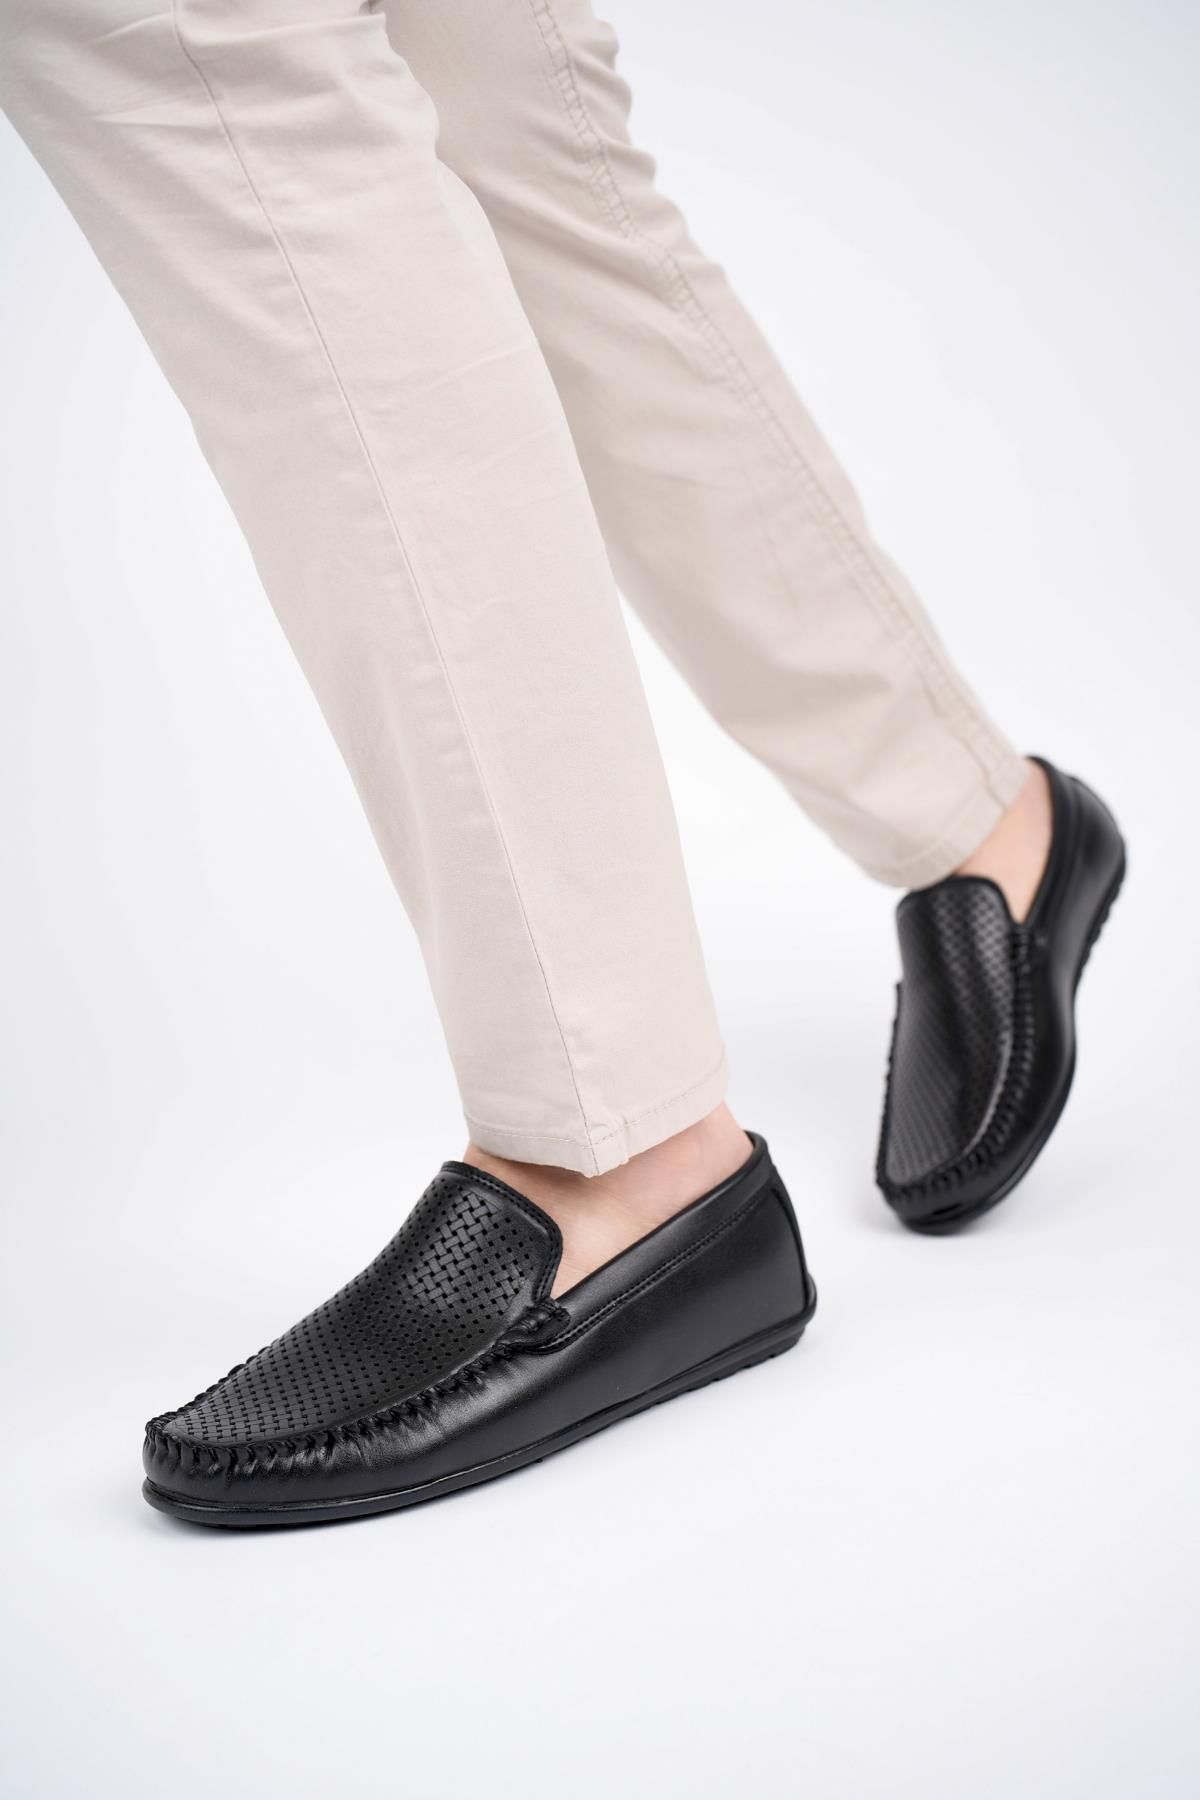 Mb113 Garantili Erkek Günlük Klasik Casual Rahat Ortopedik Esnek Yazlık Ayakkabı